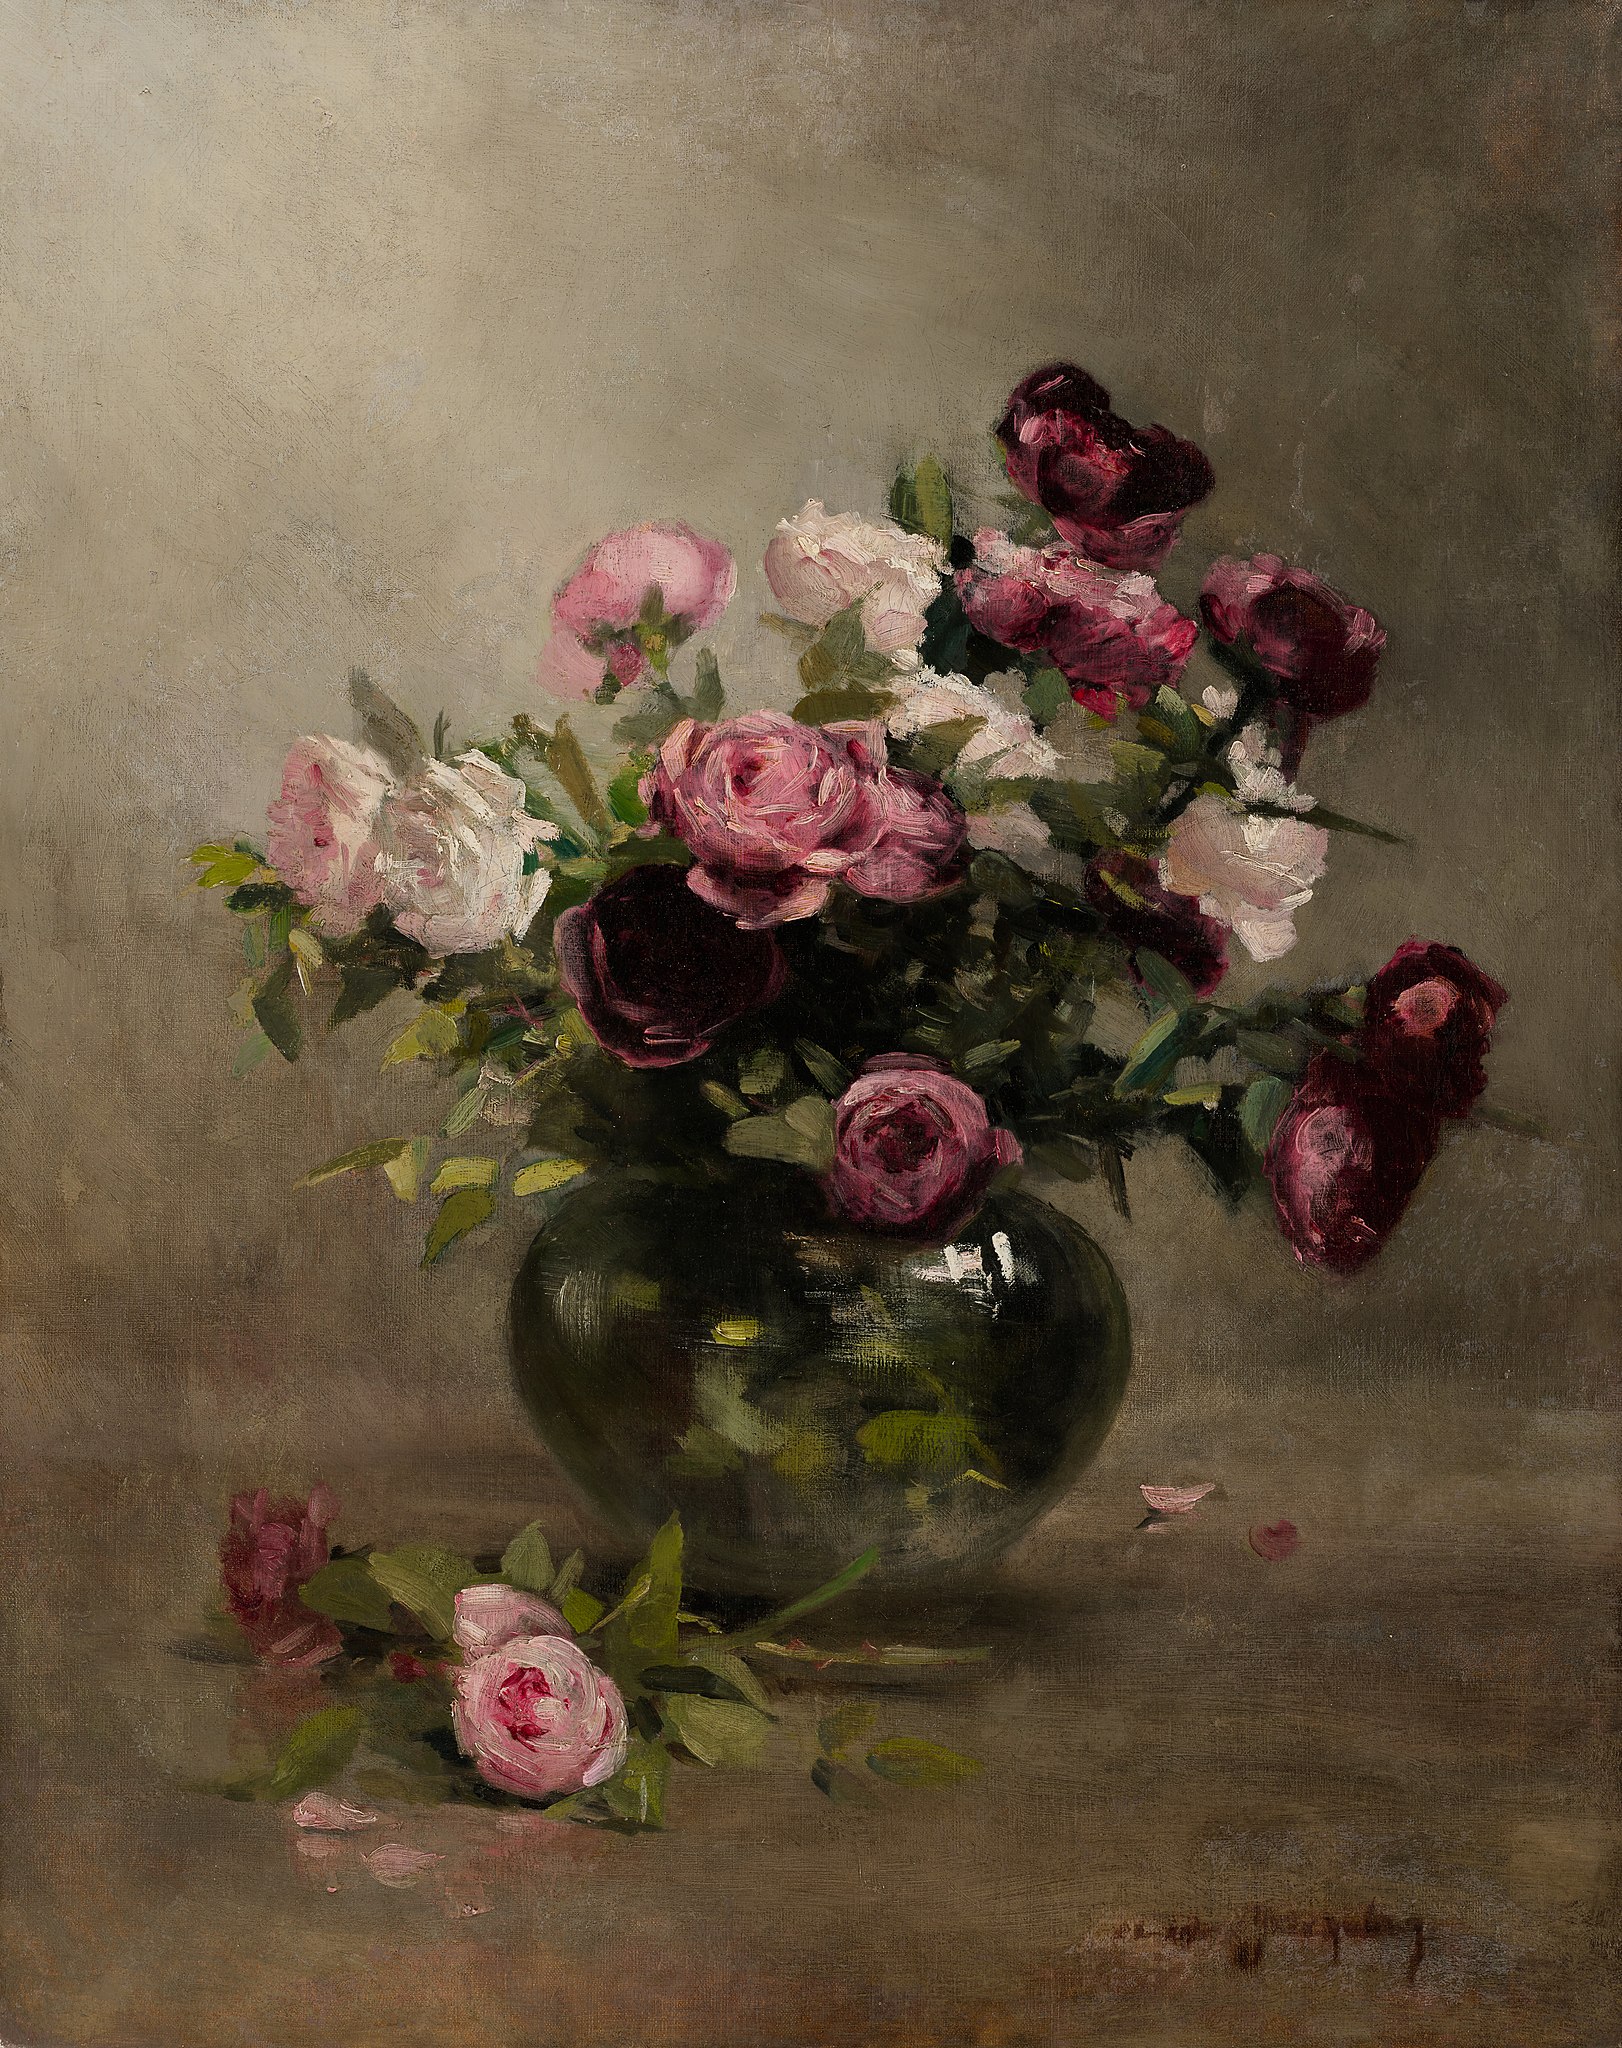 गुलाब का फूलदान by Eva Gonzalès - 1870 के दशक की शुरुआत में - 79.85 × 63.34 सेमी 